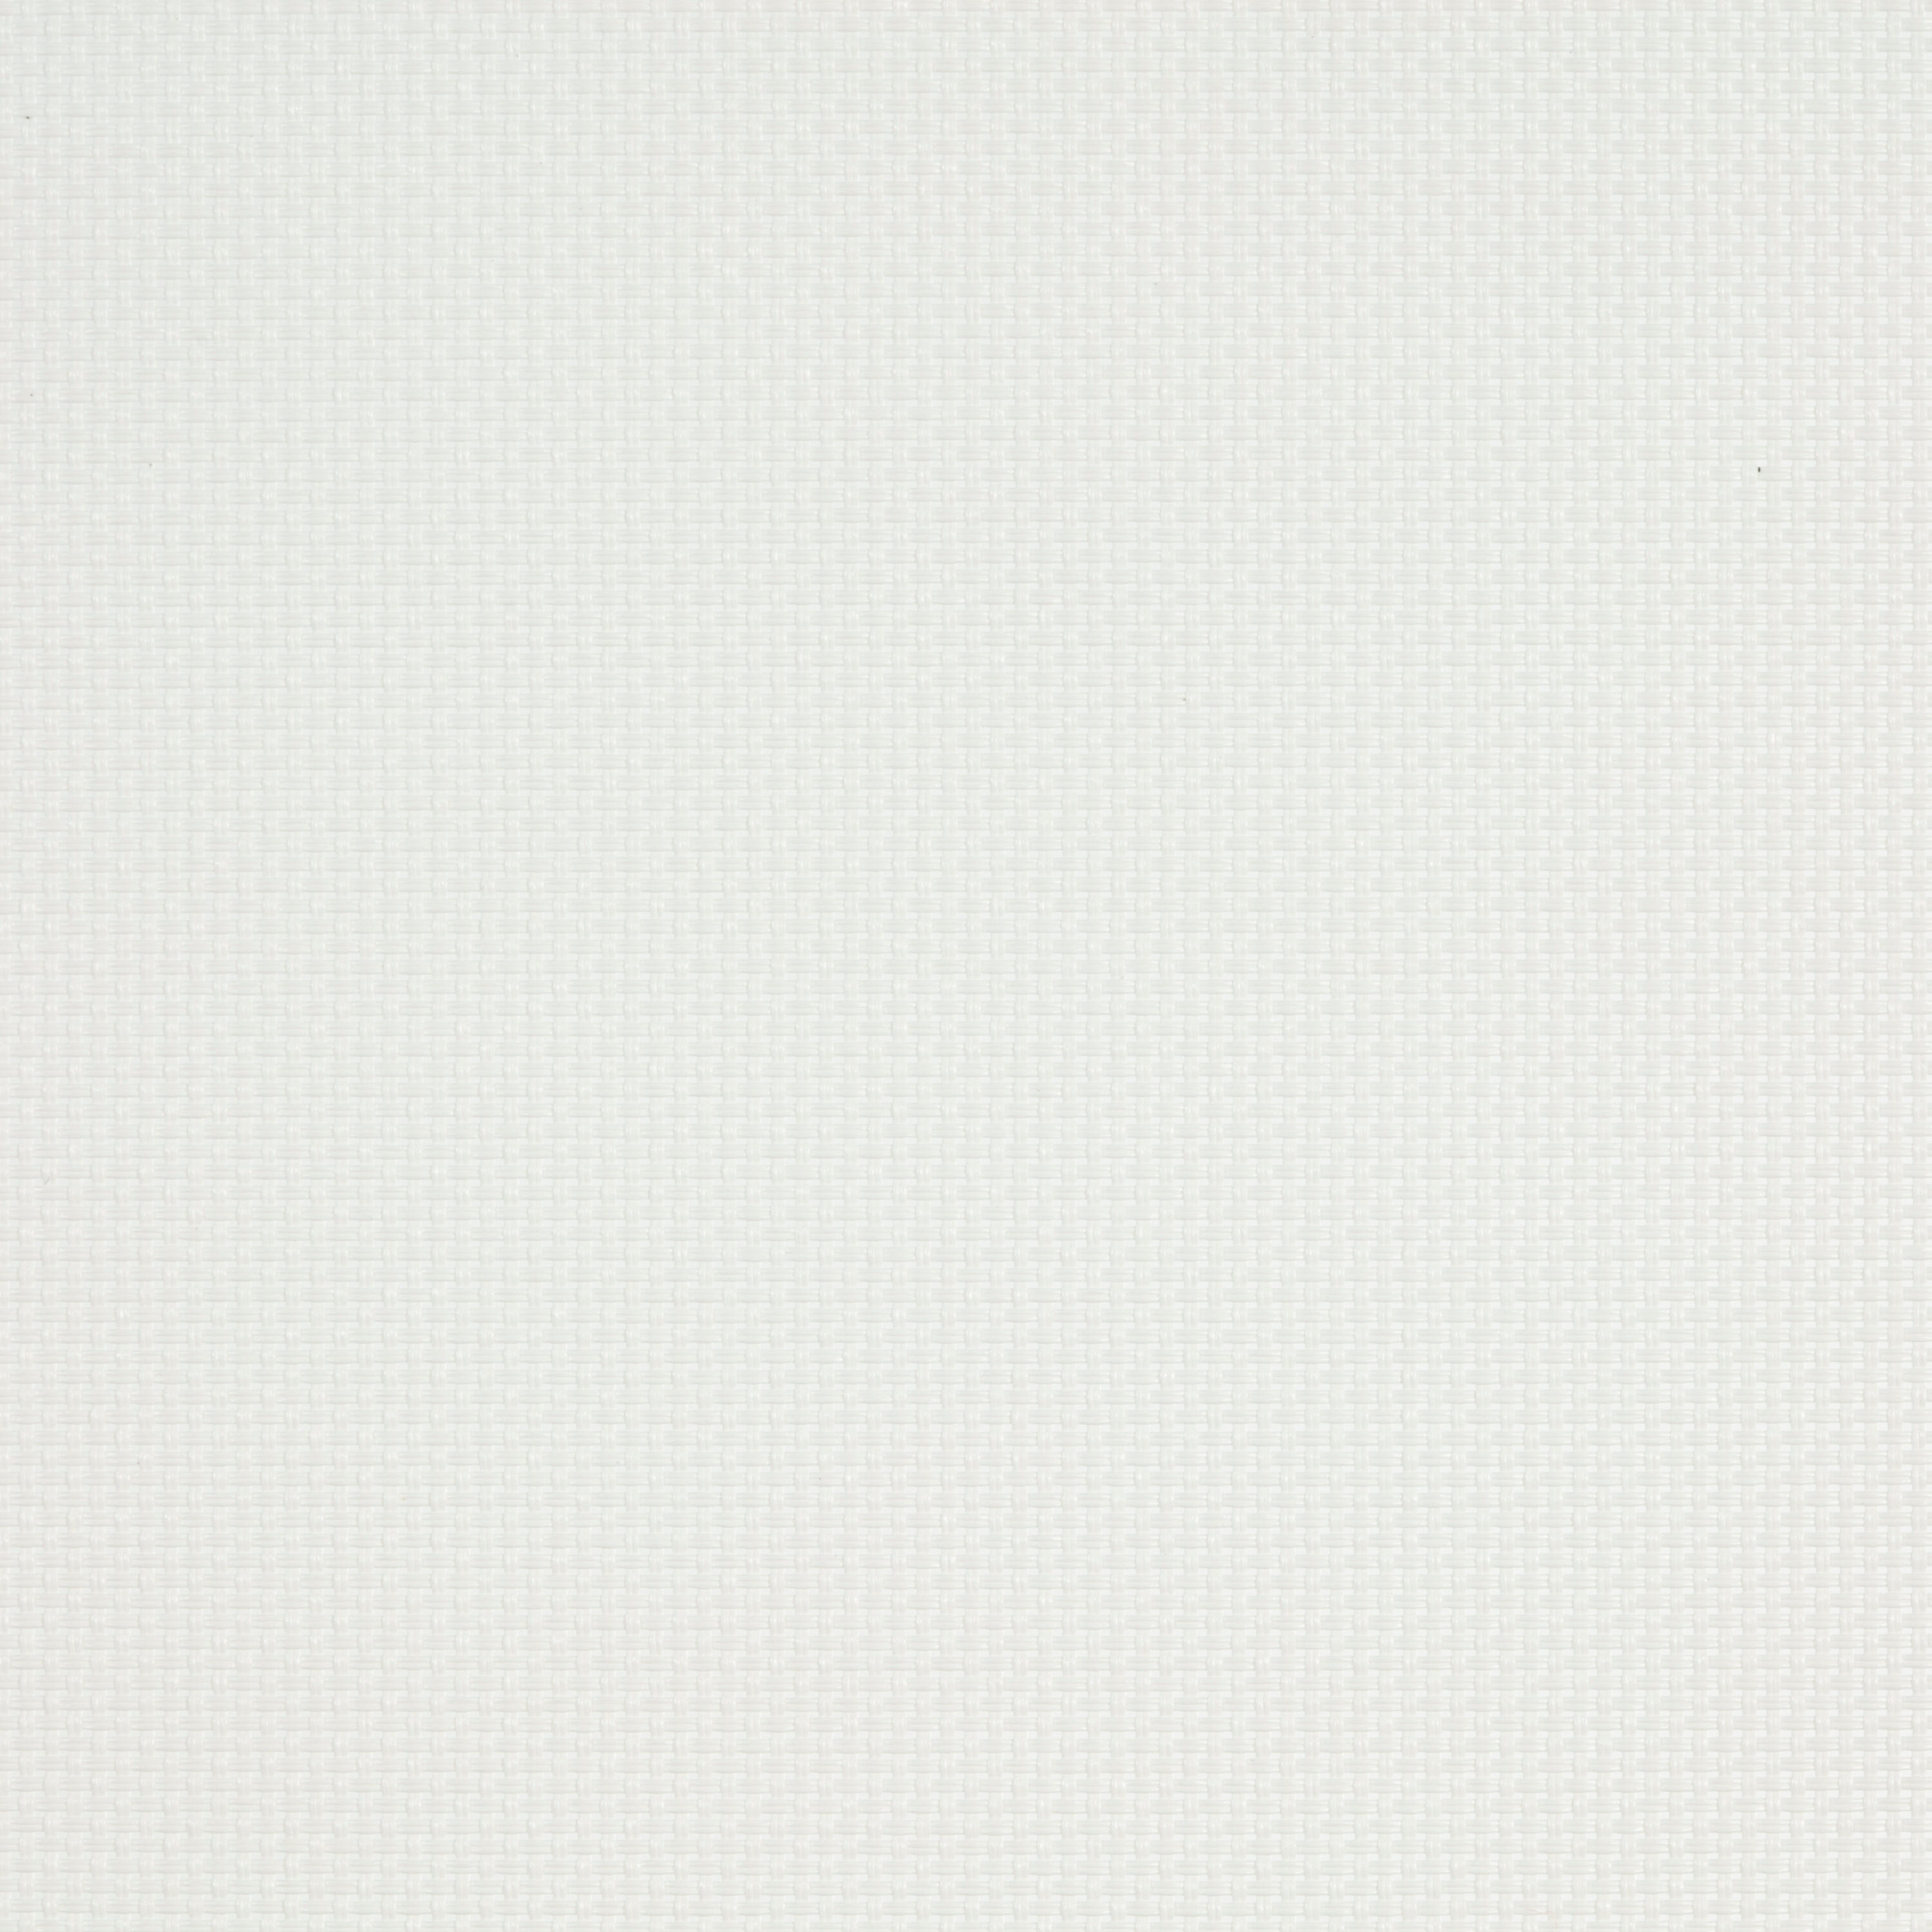 Tenda a rullo filtrante INSPIRE Brasilia bianco 135 x 250 cm - 3